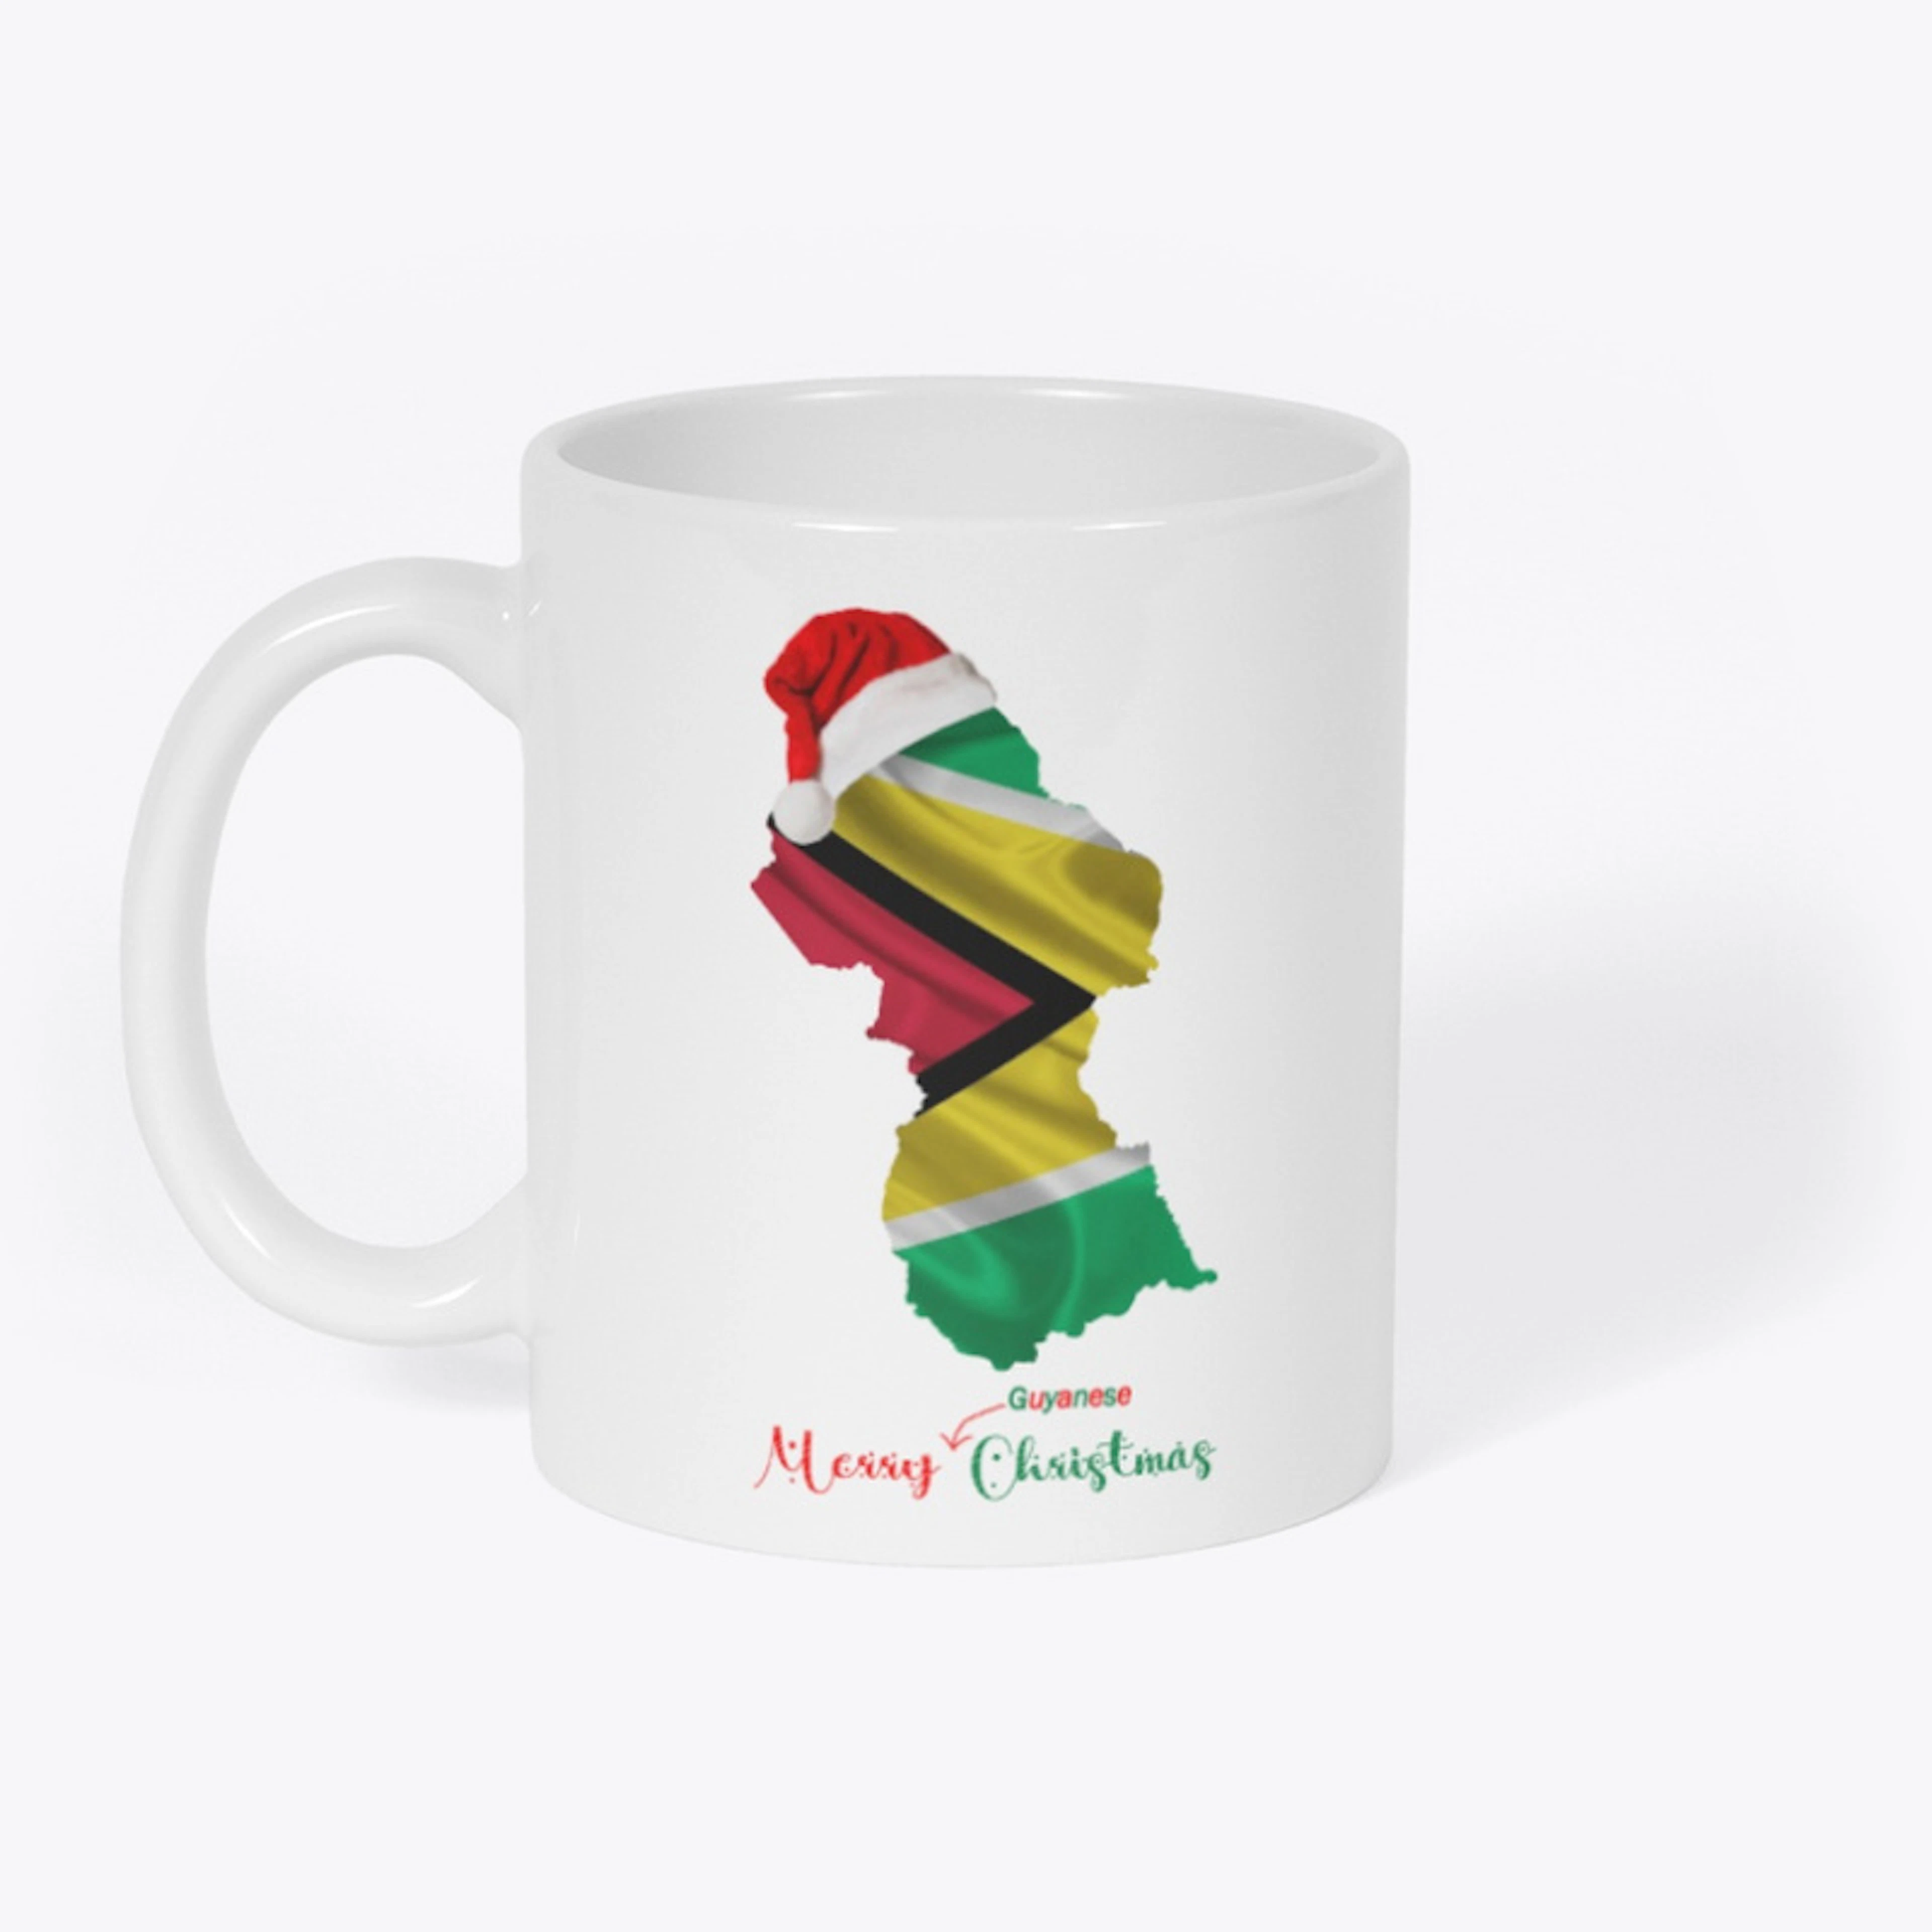 Merry Guyanese Christmas